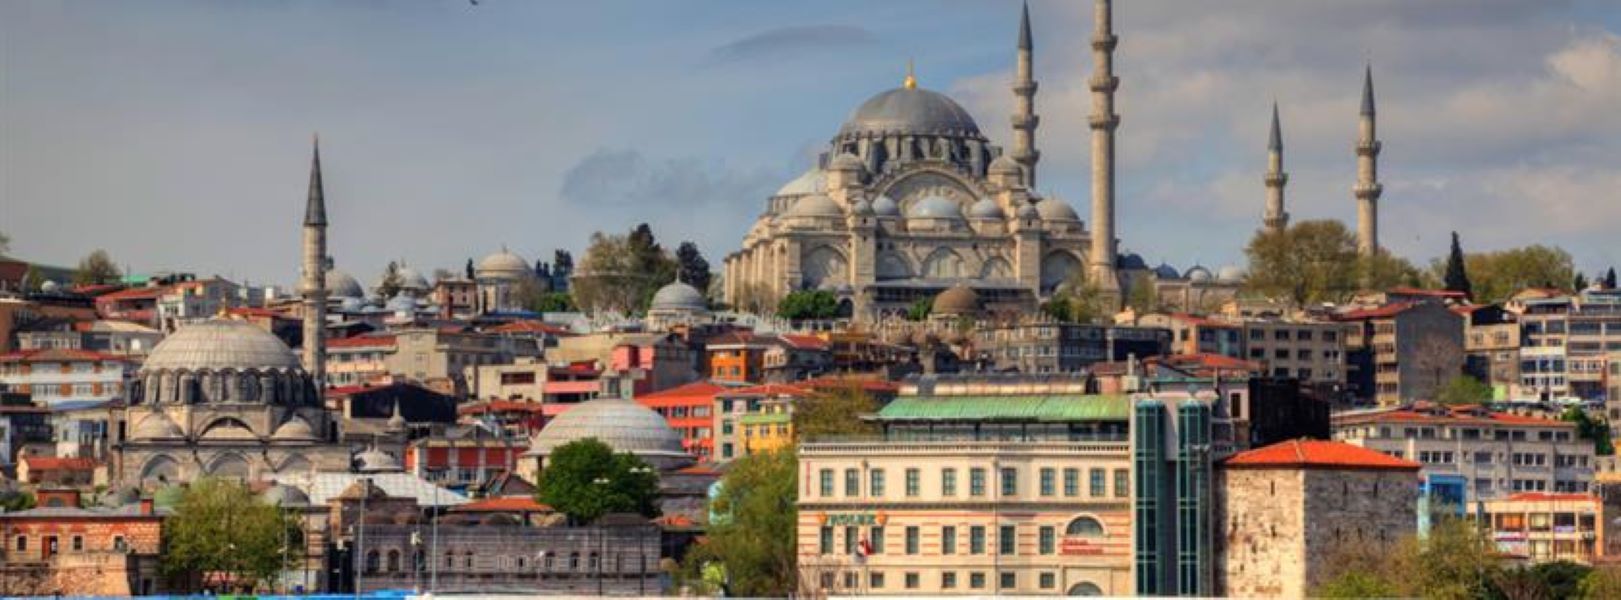 Стамбул экскурсионные туры с перелетом из москвы. Стамбул Анкара Каппадокия. Каппадокия достопримечательности Босфор. Стамбул Босфор. Стамбул и Каппадокия тур.